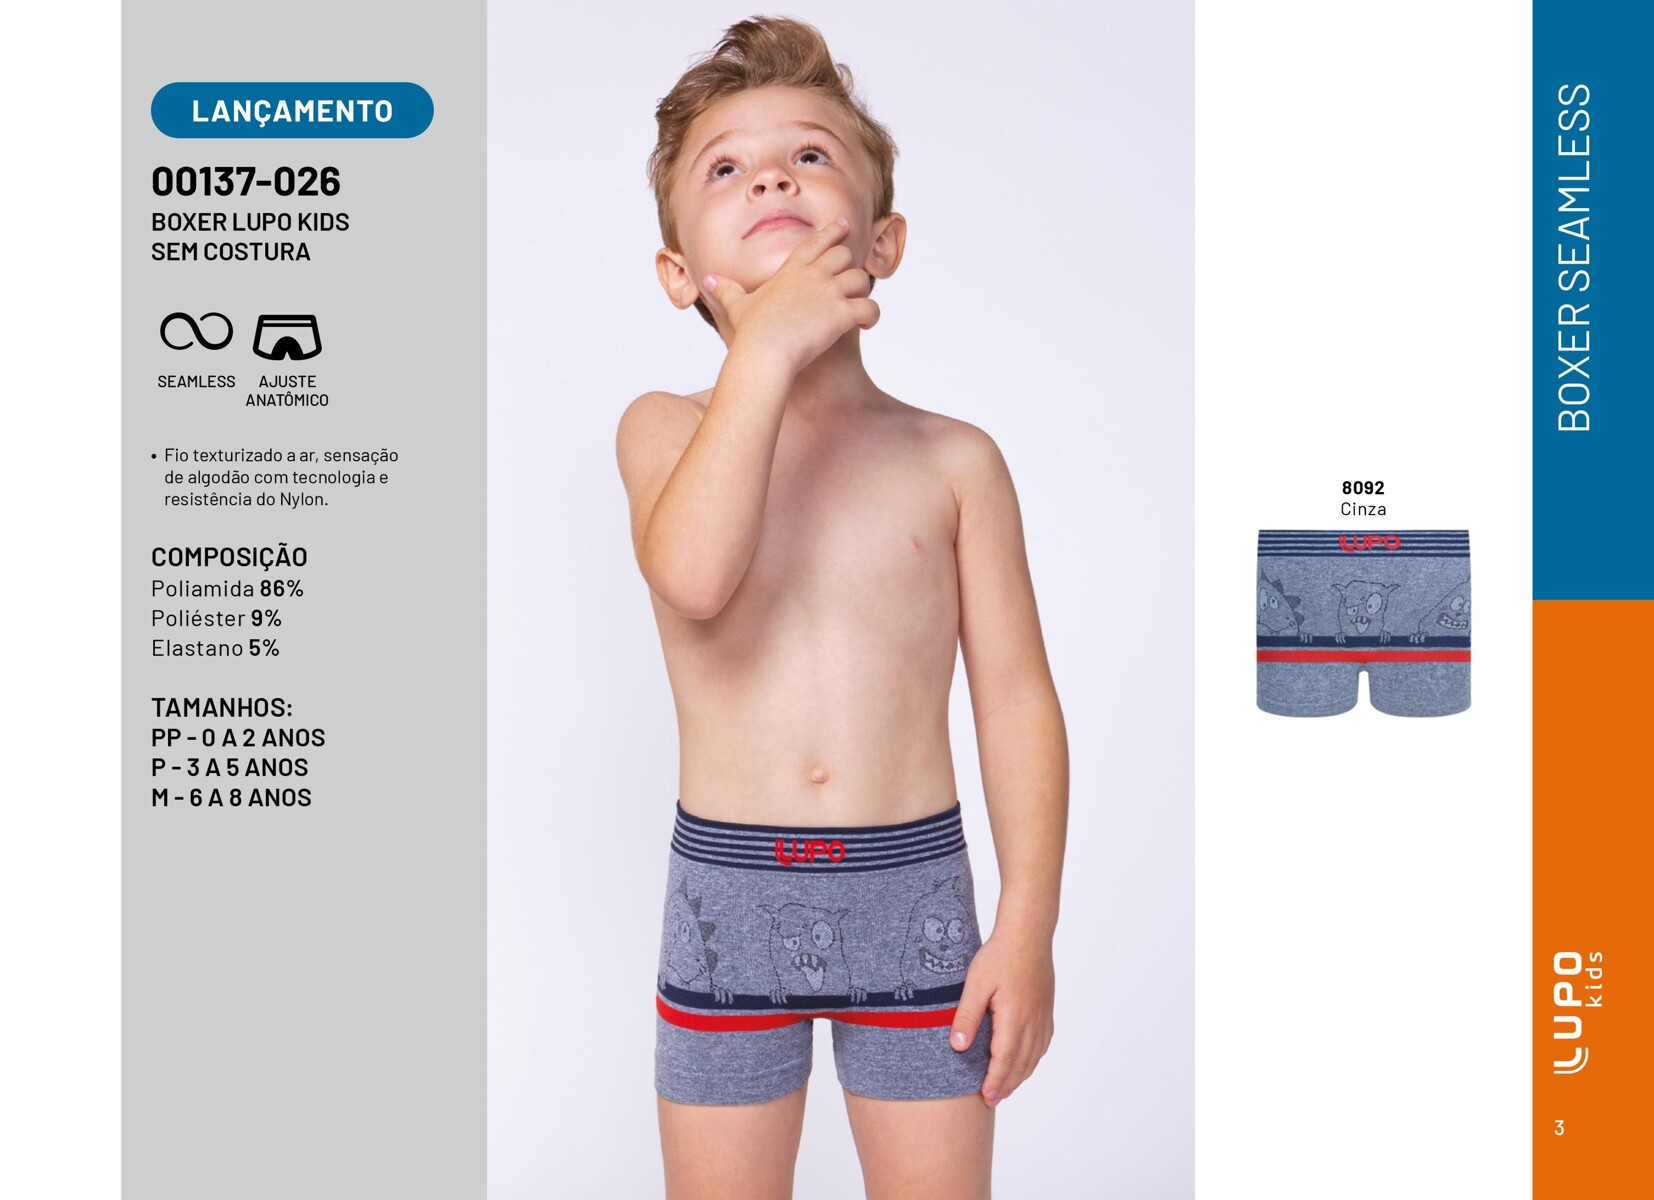 Lançamento: Boxer Lupo Kids sem costura com ajuste anatômico e tecnologia de fio texturizado